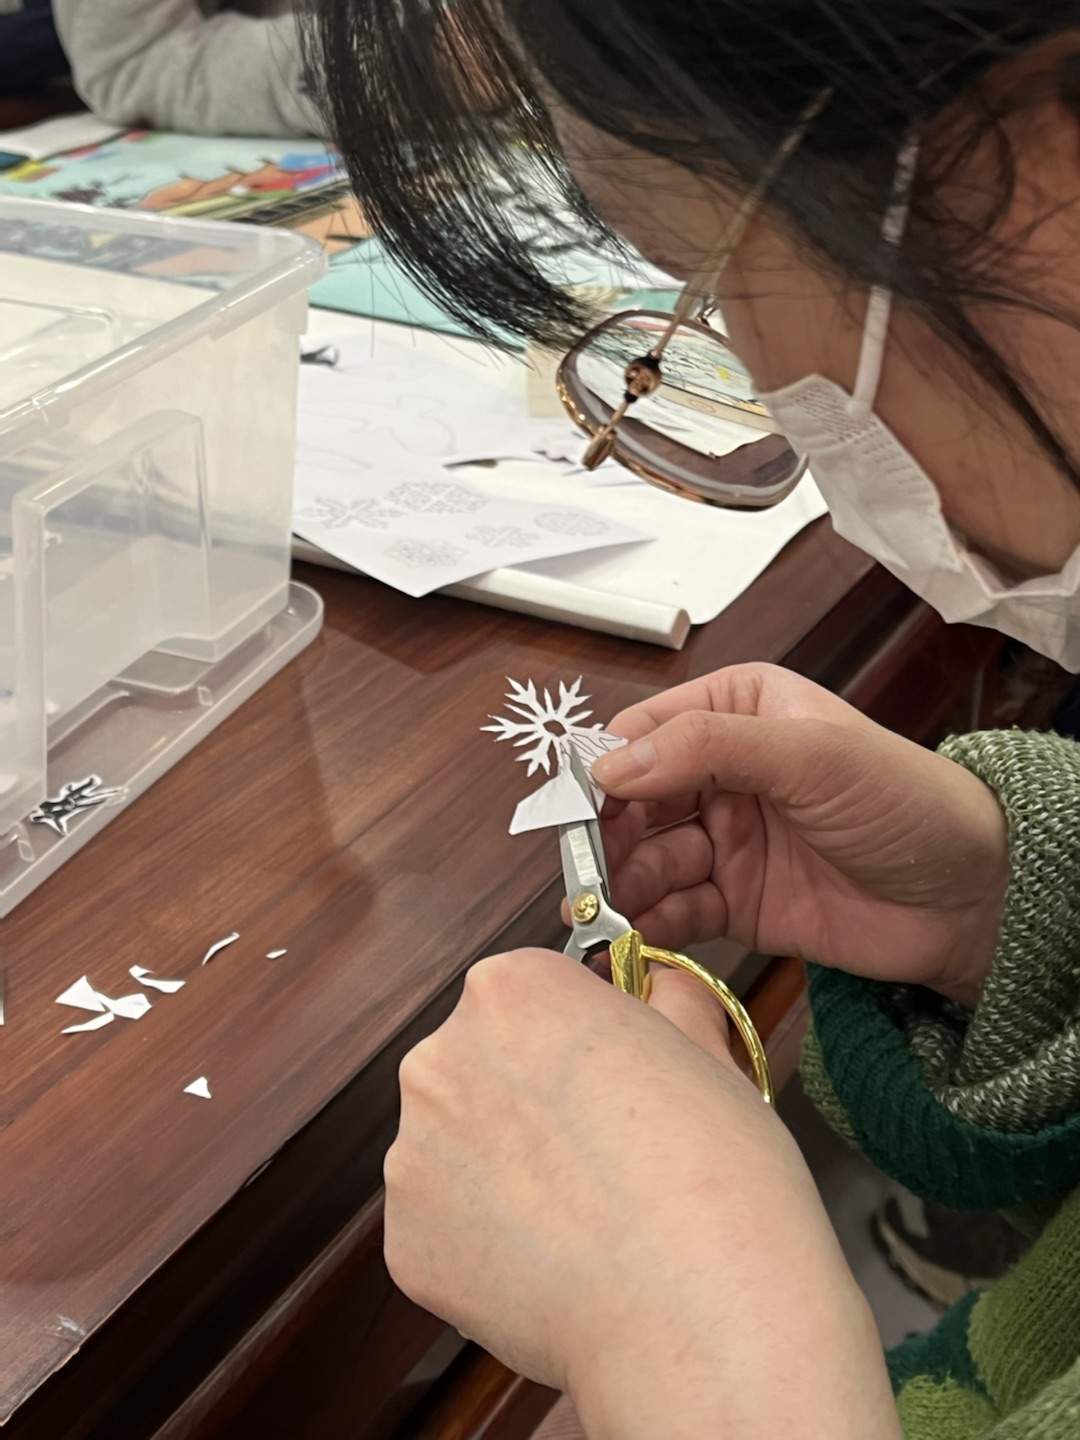 中国艺术剪纸协会会长卢雪与中学生共剪“未来”迎冬奥